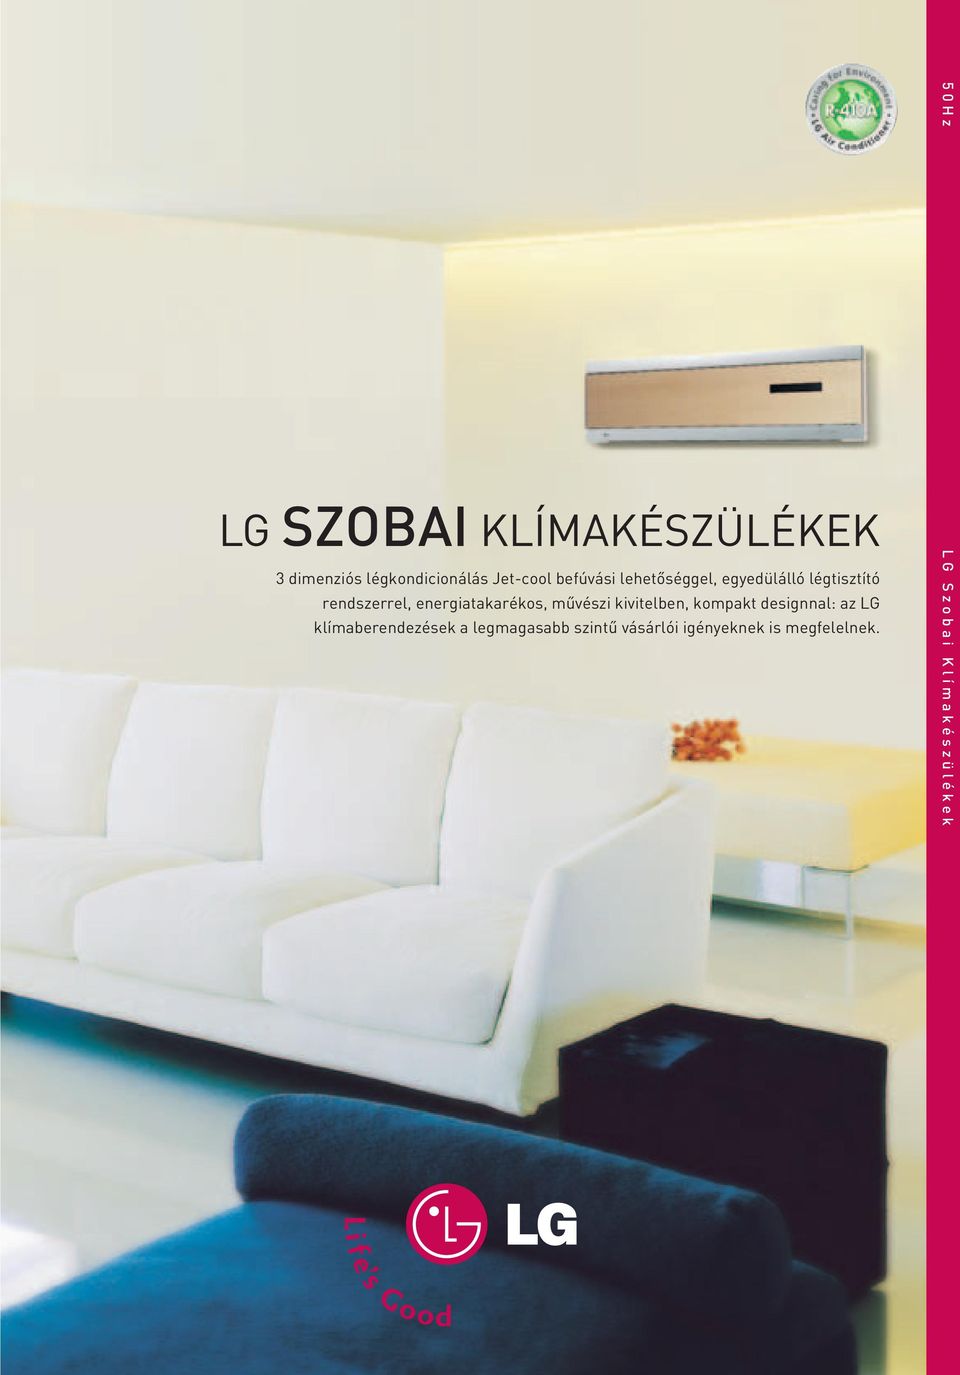 energiatakarékos, mûvészi kivitelben, kompakt designnal: az LG